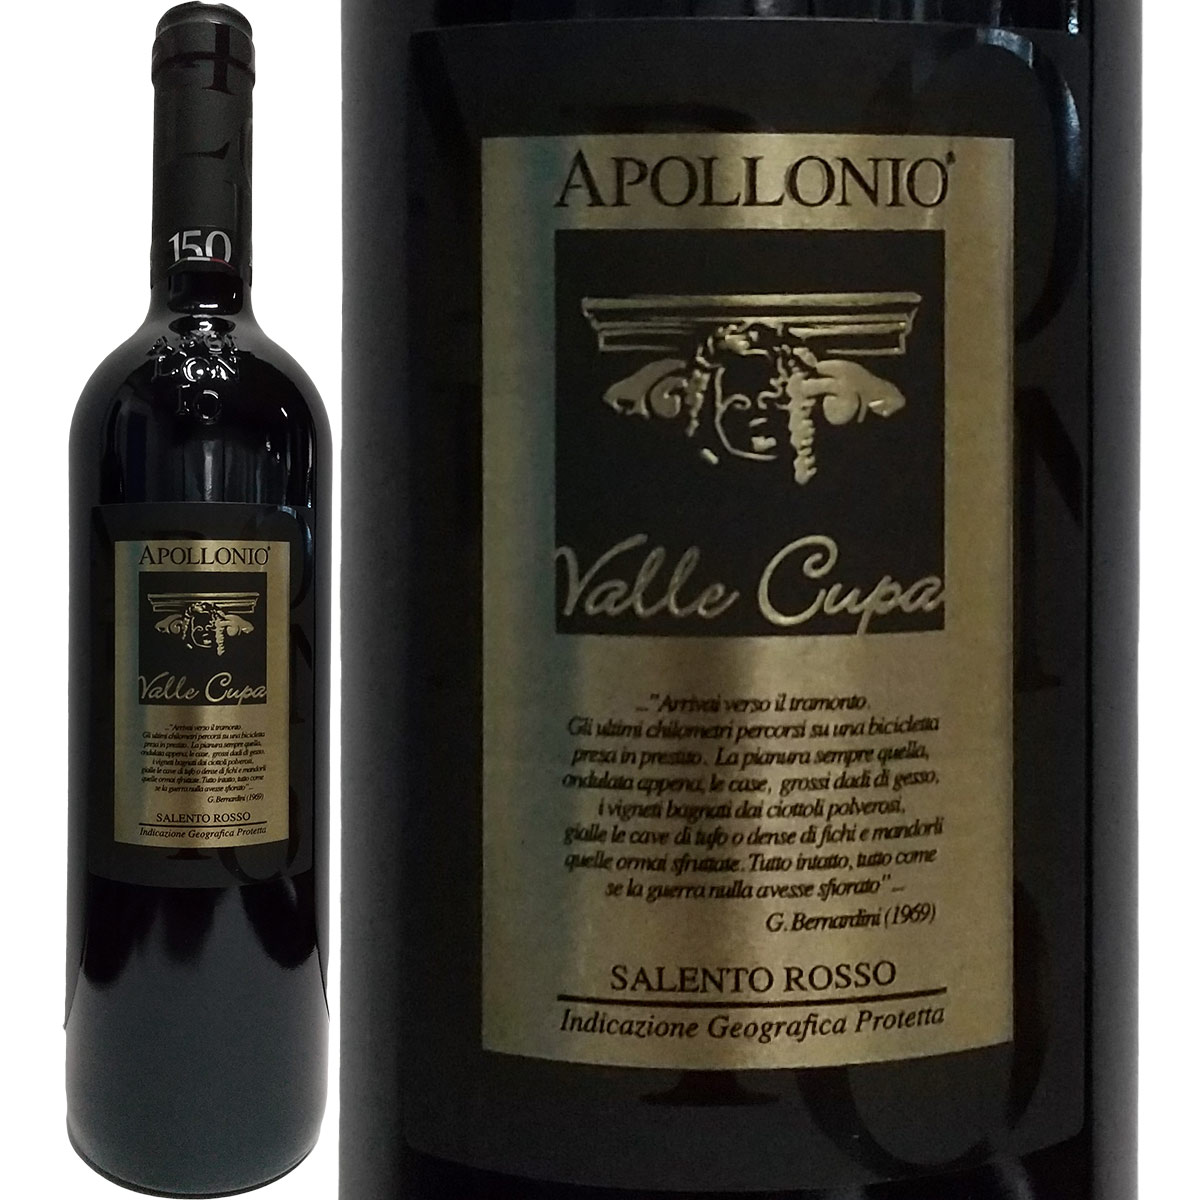 アッポローニオ・ヴァッレ・クーパ 2014【イタリア】【赤ワイン】【750ml】【フルボディ】【辛口】